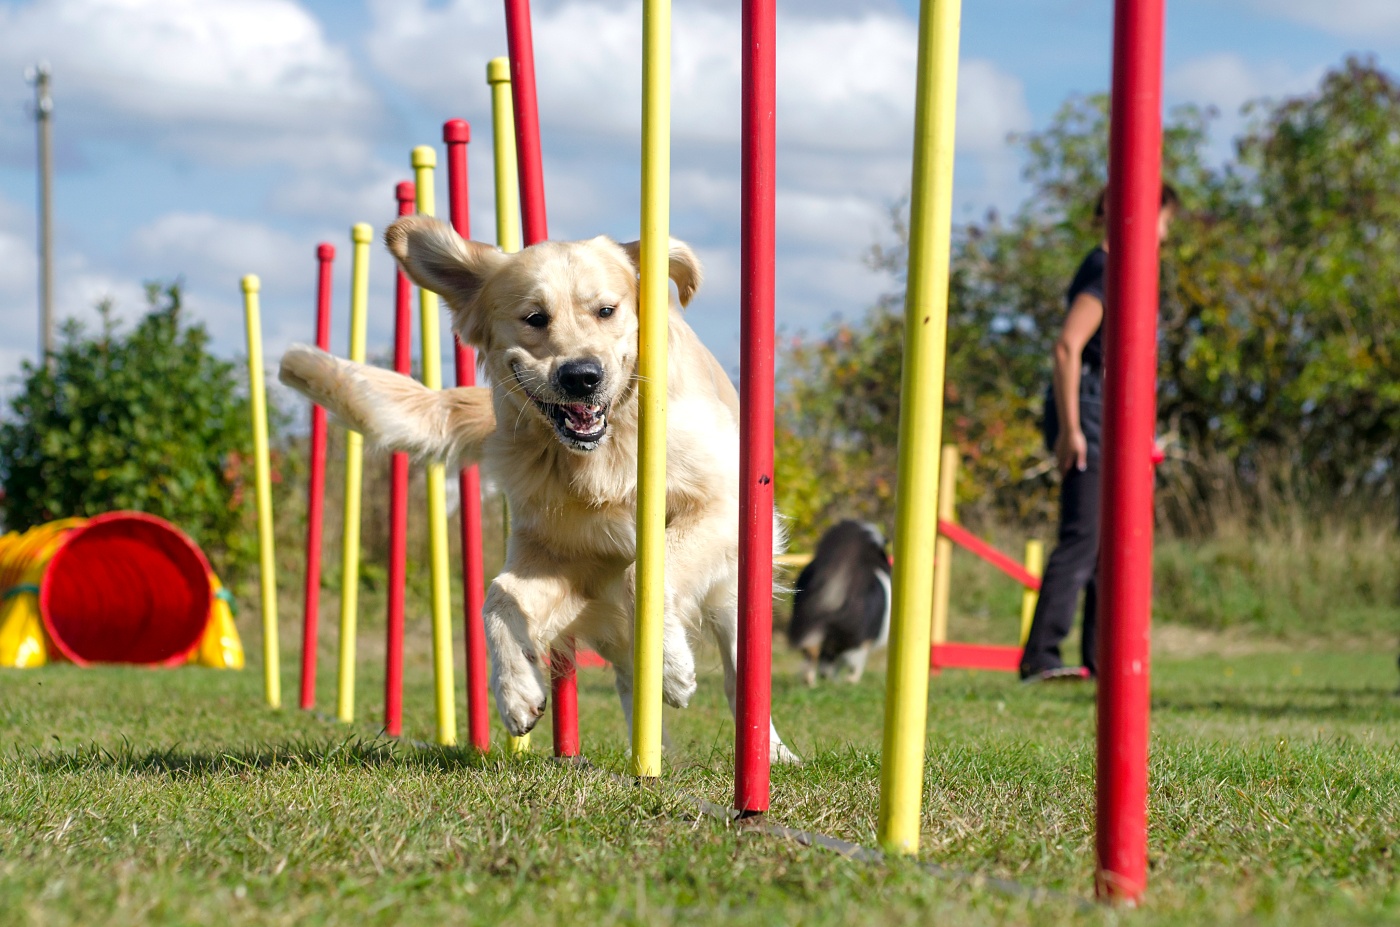 L'agility pour chien : un sport canin ludique - Magazine zooplus